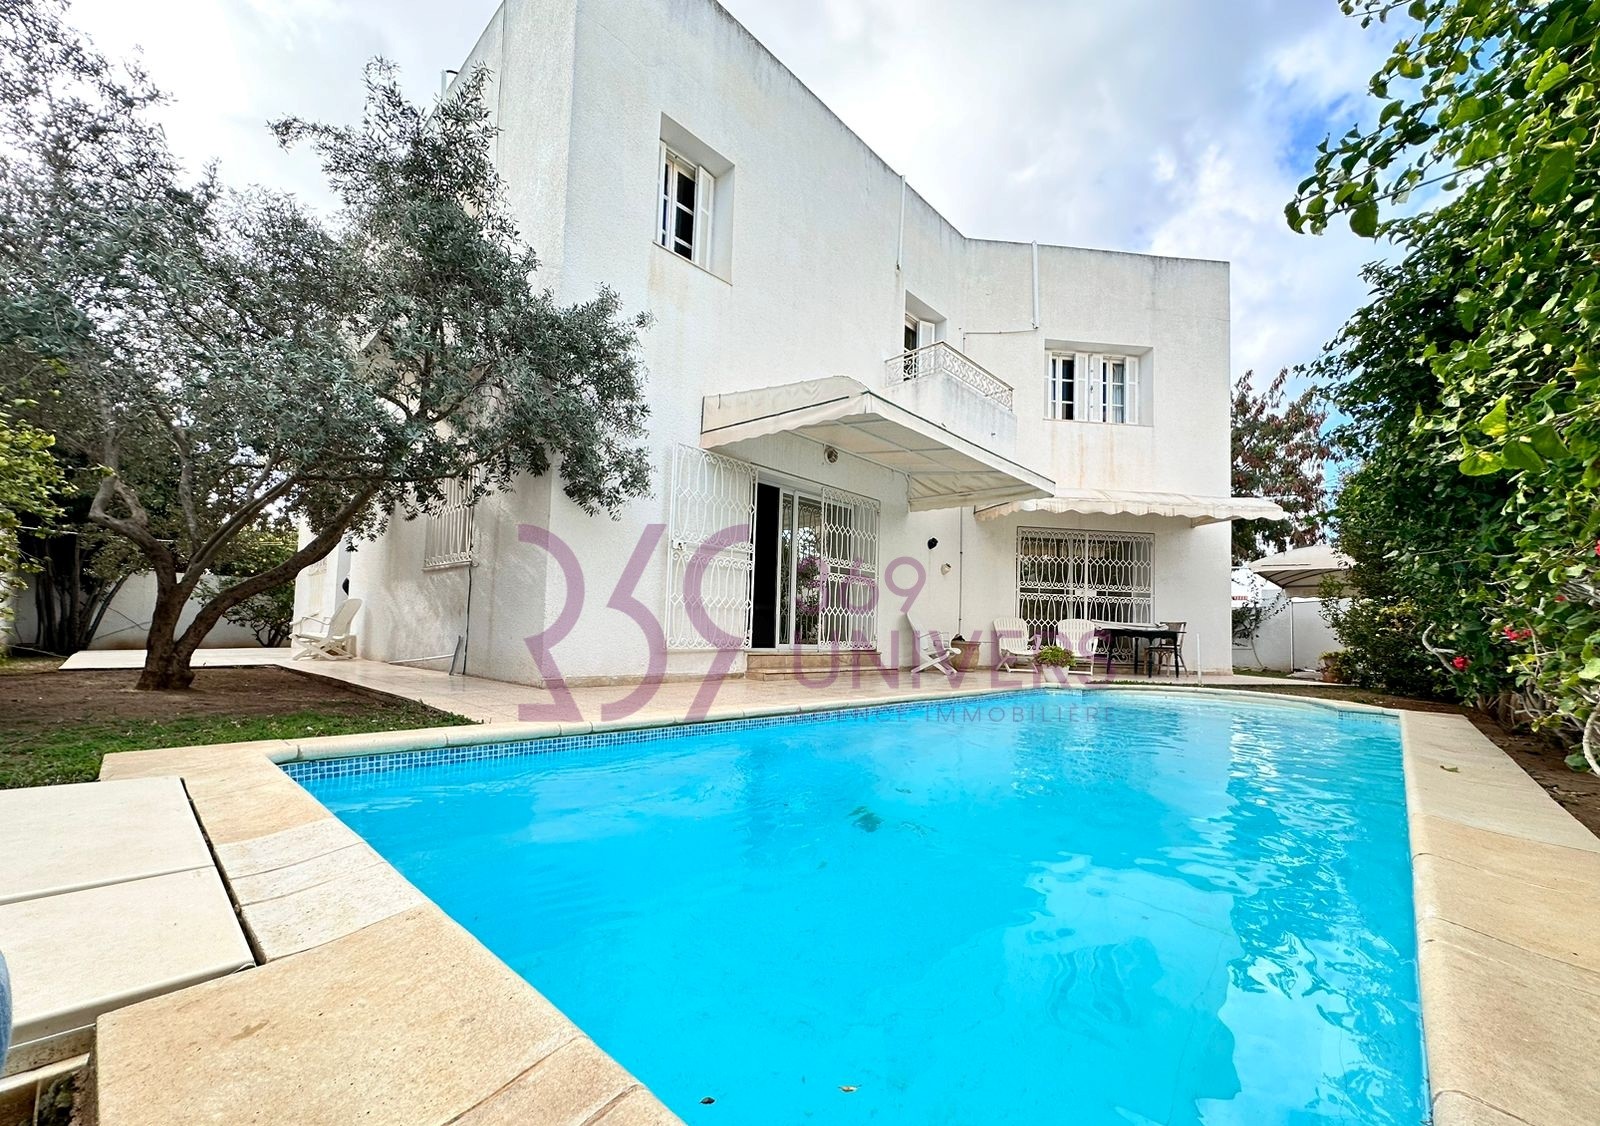 La Marsa Marsa Ennassim Vente Maisons Villa avec piscine  la marsa ref sh005